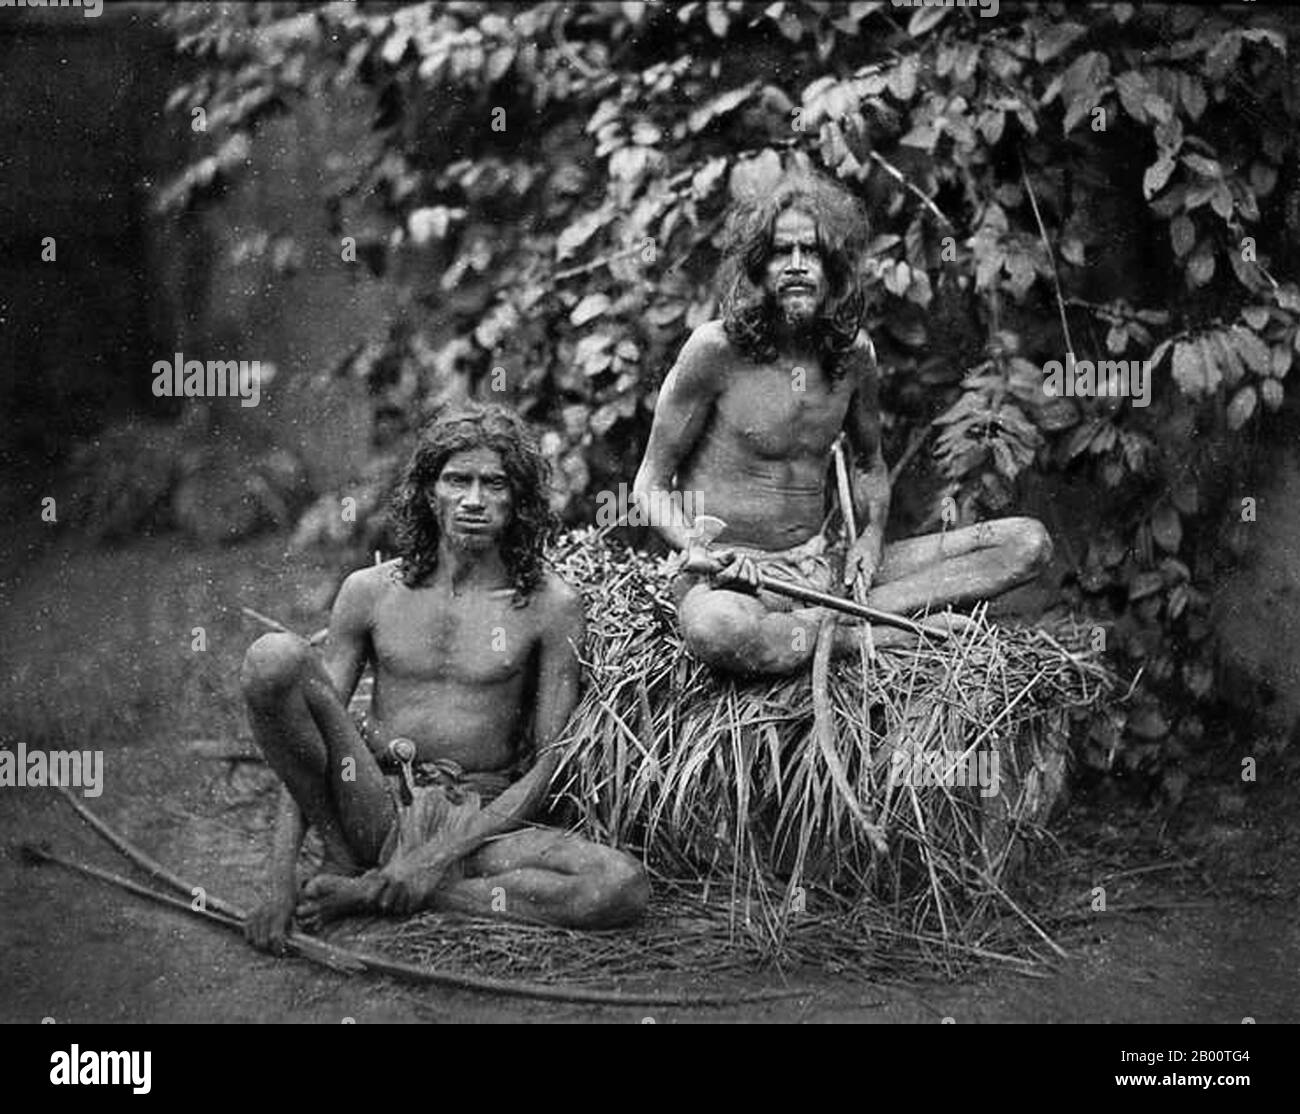 Sri Lanka: Zwei Veddha-Männer mit Bogen und Pfeilen. Foto von Charles T. Scowen (1852-1948), Ende des 19. Jahrhunderts. Die Wanniyala-Aetto, oder "Waldmenschen", besser bekannt als Veddas oder Veddahs, sind ein indigenes Volk von Sri Lanka, einer Inselnation im Indischen Ozean; sie waren nie zahlreich und sind jetzt nur noch wenige. Sri Lanka war schon immer ein wichtiger Hafen und Handelsposten in der Antike und wurde zunehmend von Handelsschiffen aus dem Nahen Osten, Persien, Burma, Thailand, Malaysia, Indonesien und anderen Teilen Südostasiens frequentiert. Stockfoto